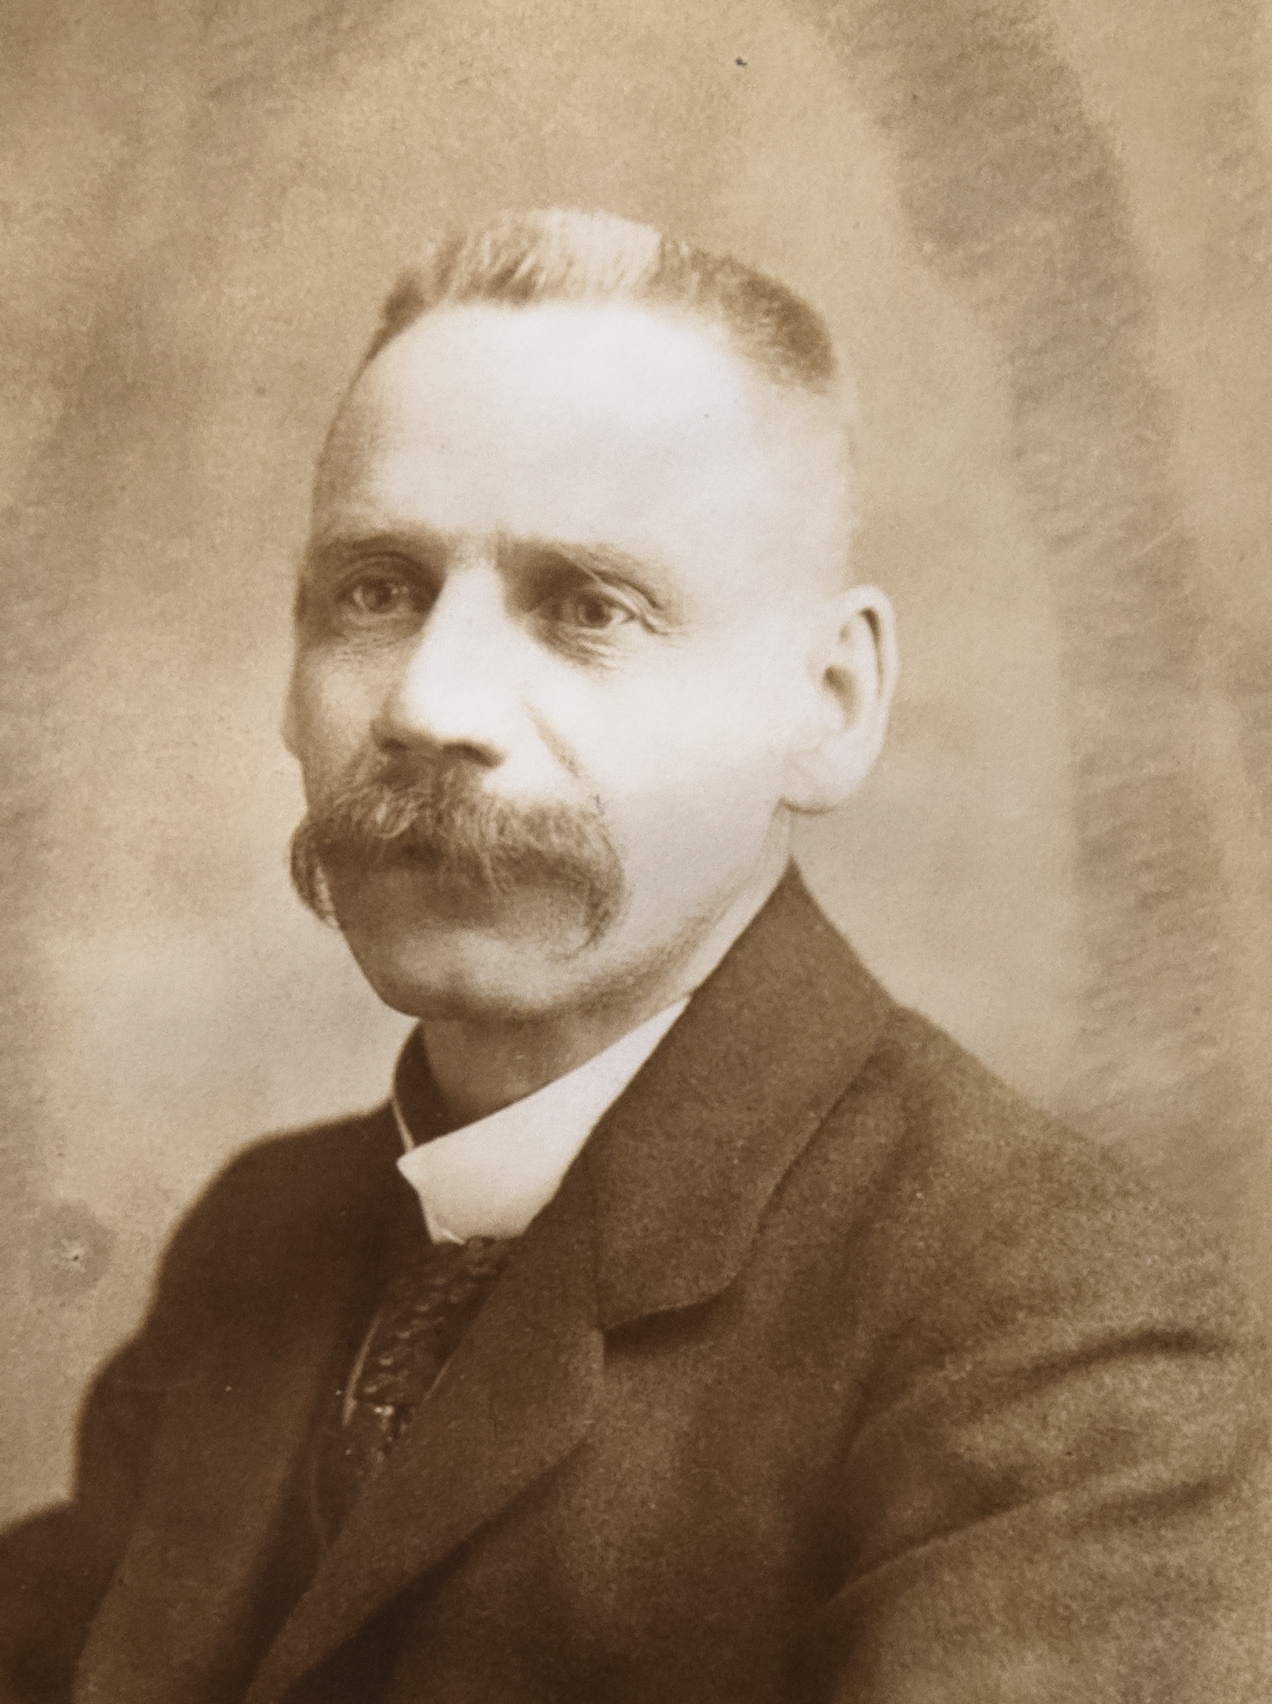 Joseph Monrique (né en 1869), négociant à Andenne, président du Comité local de Secours, qui œuvrera en faveur des prisonniers italiens détenu dans sa ville.